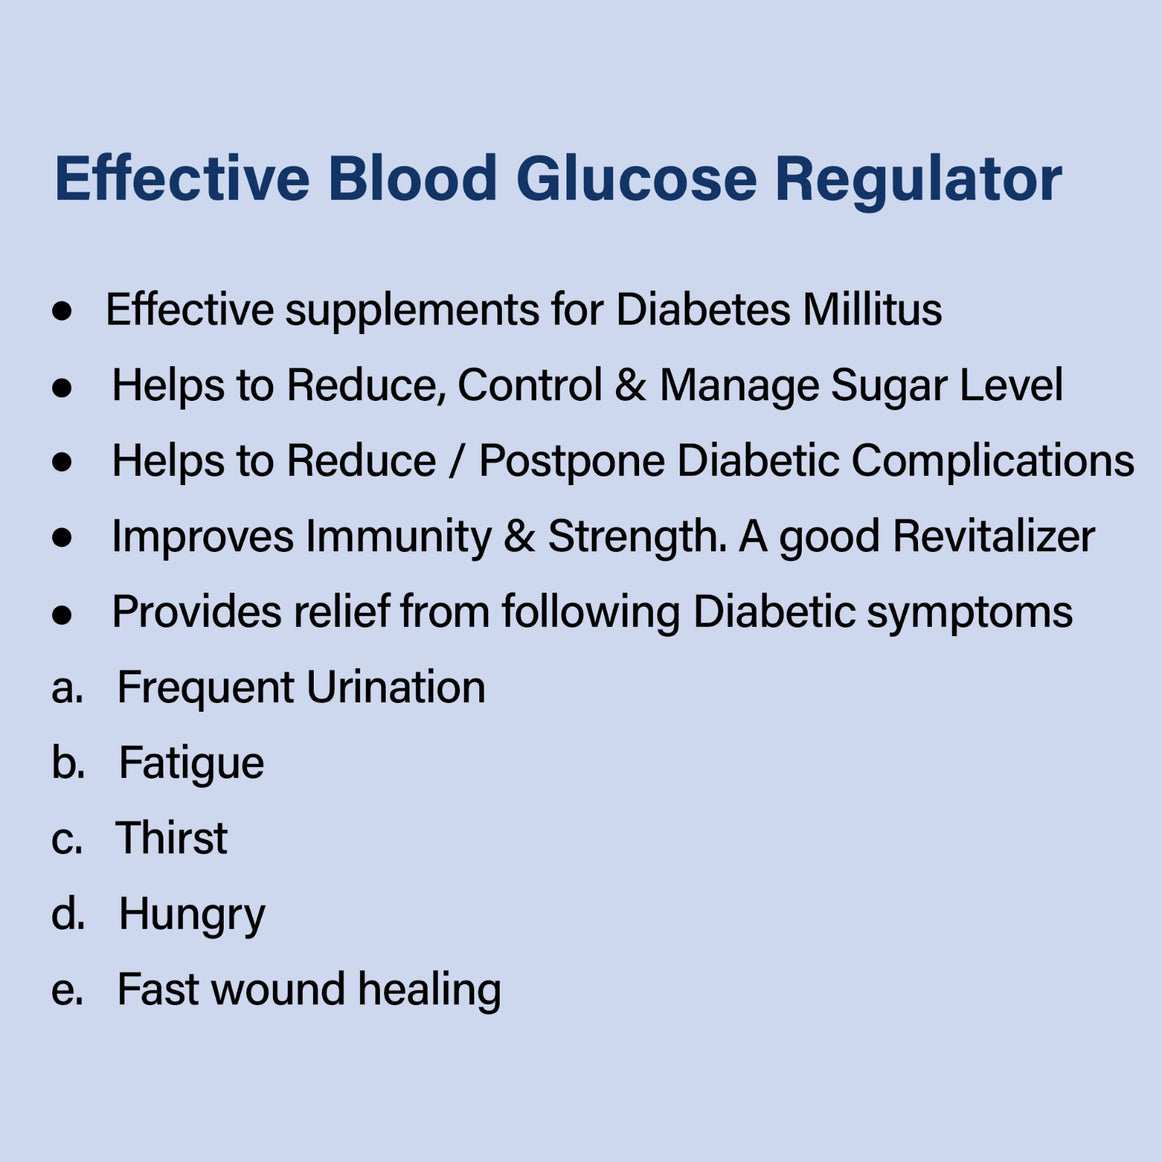 DIARULE- Effective Blood Glucose Regulator